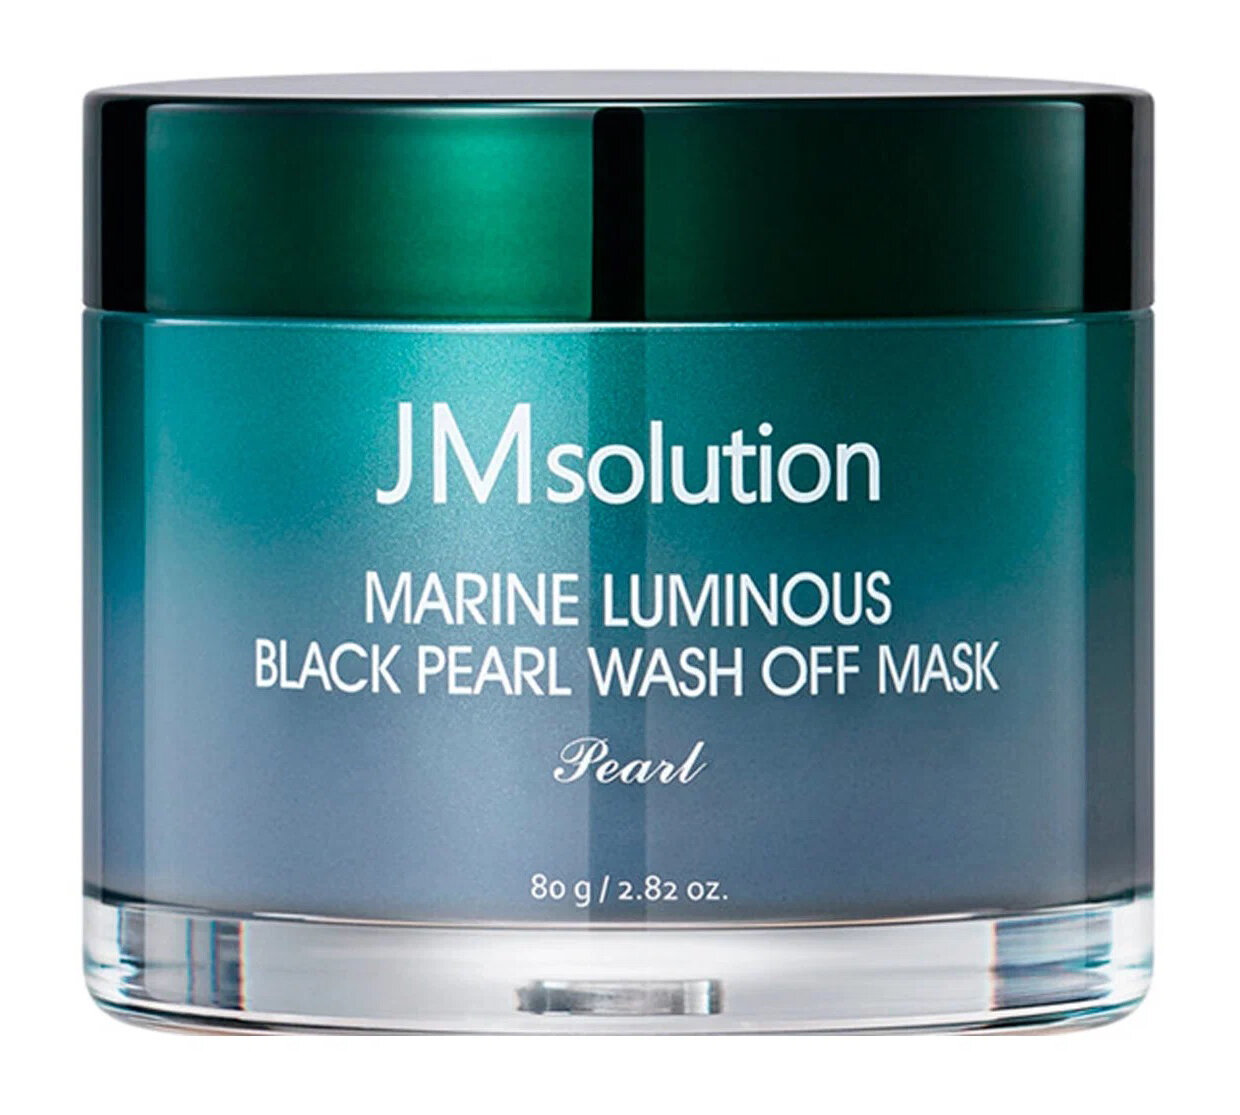 Очищающая маска для лица с активированным углем, глиной и морскими минералами JMsolution Marine Luminous Black Pearl Wash Off Mask, 120 г